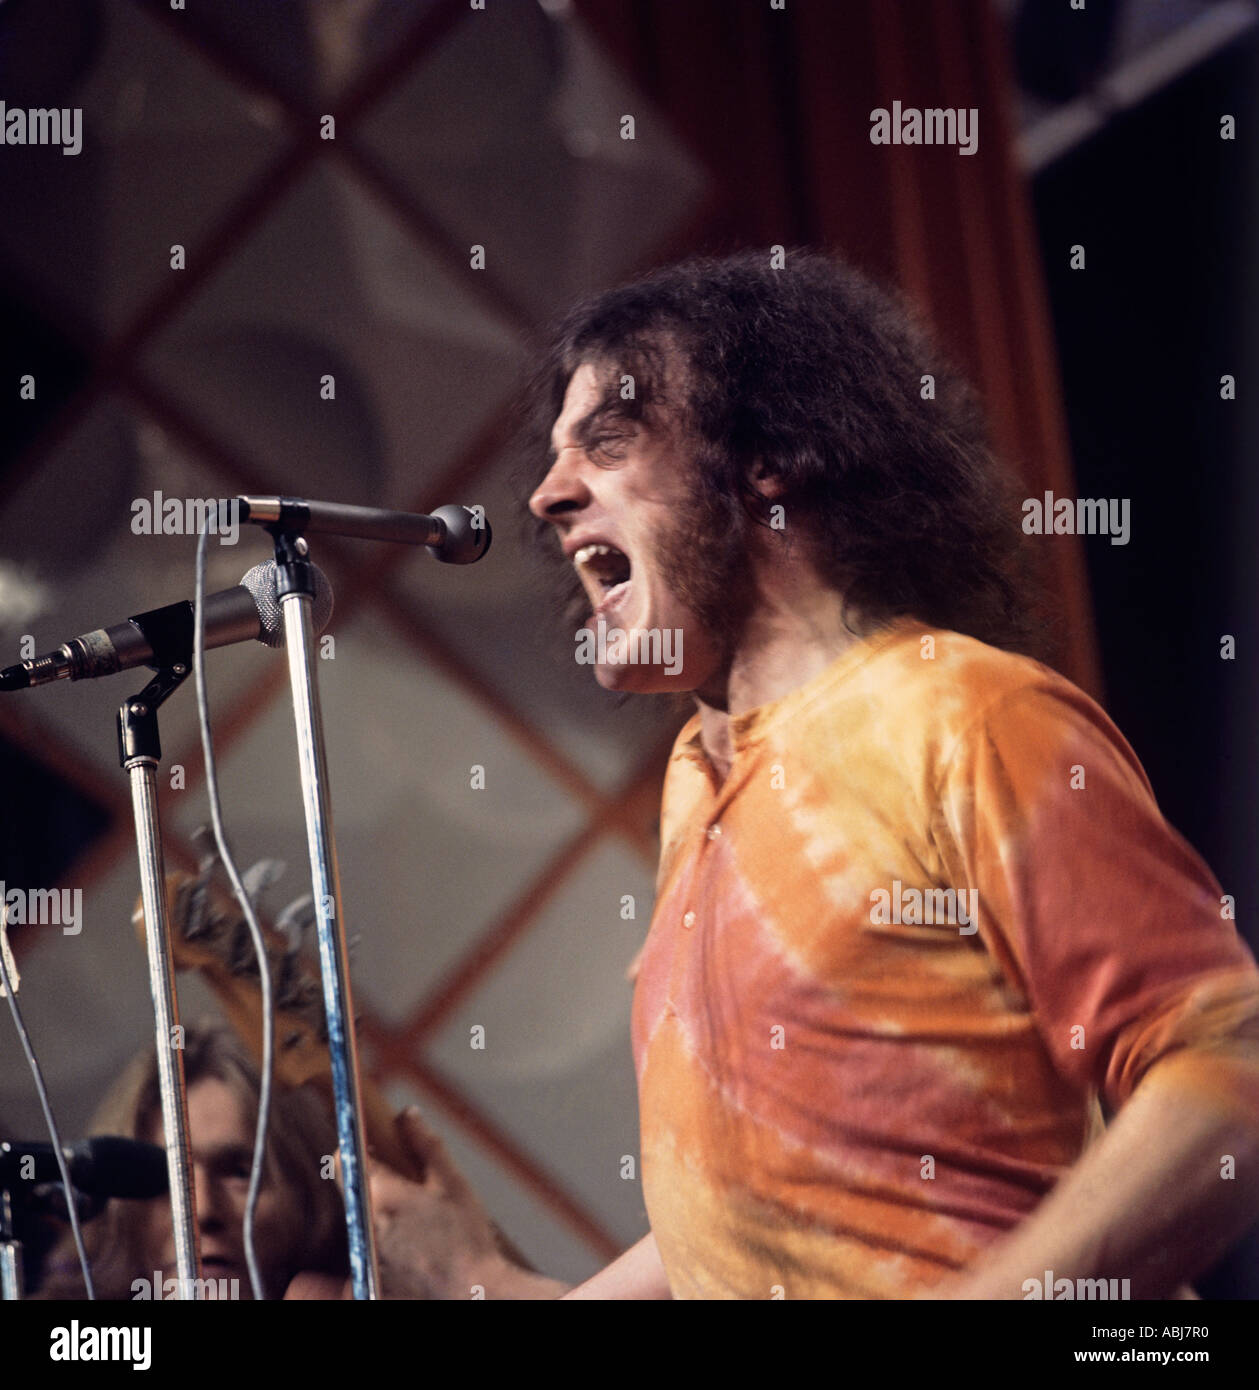 Joe Cocker sings at a Midem Concert at the peak of his career. Stock Photo